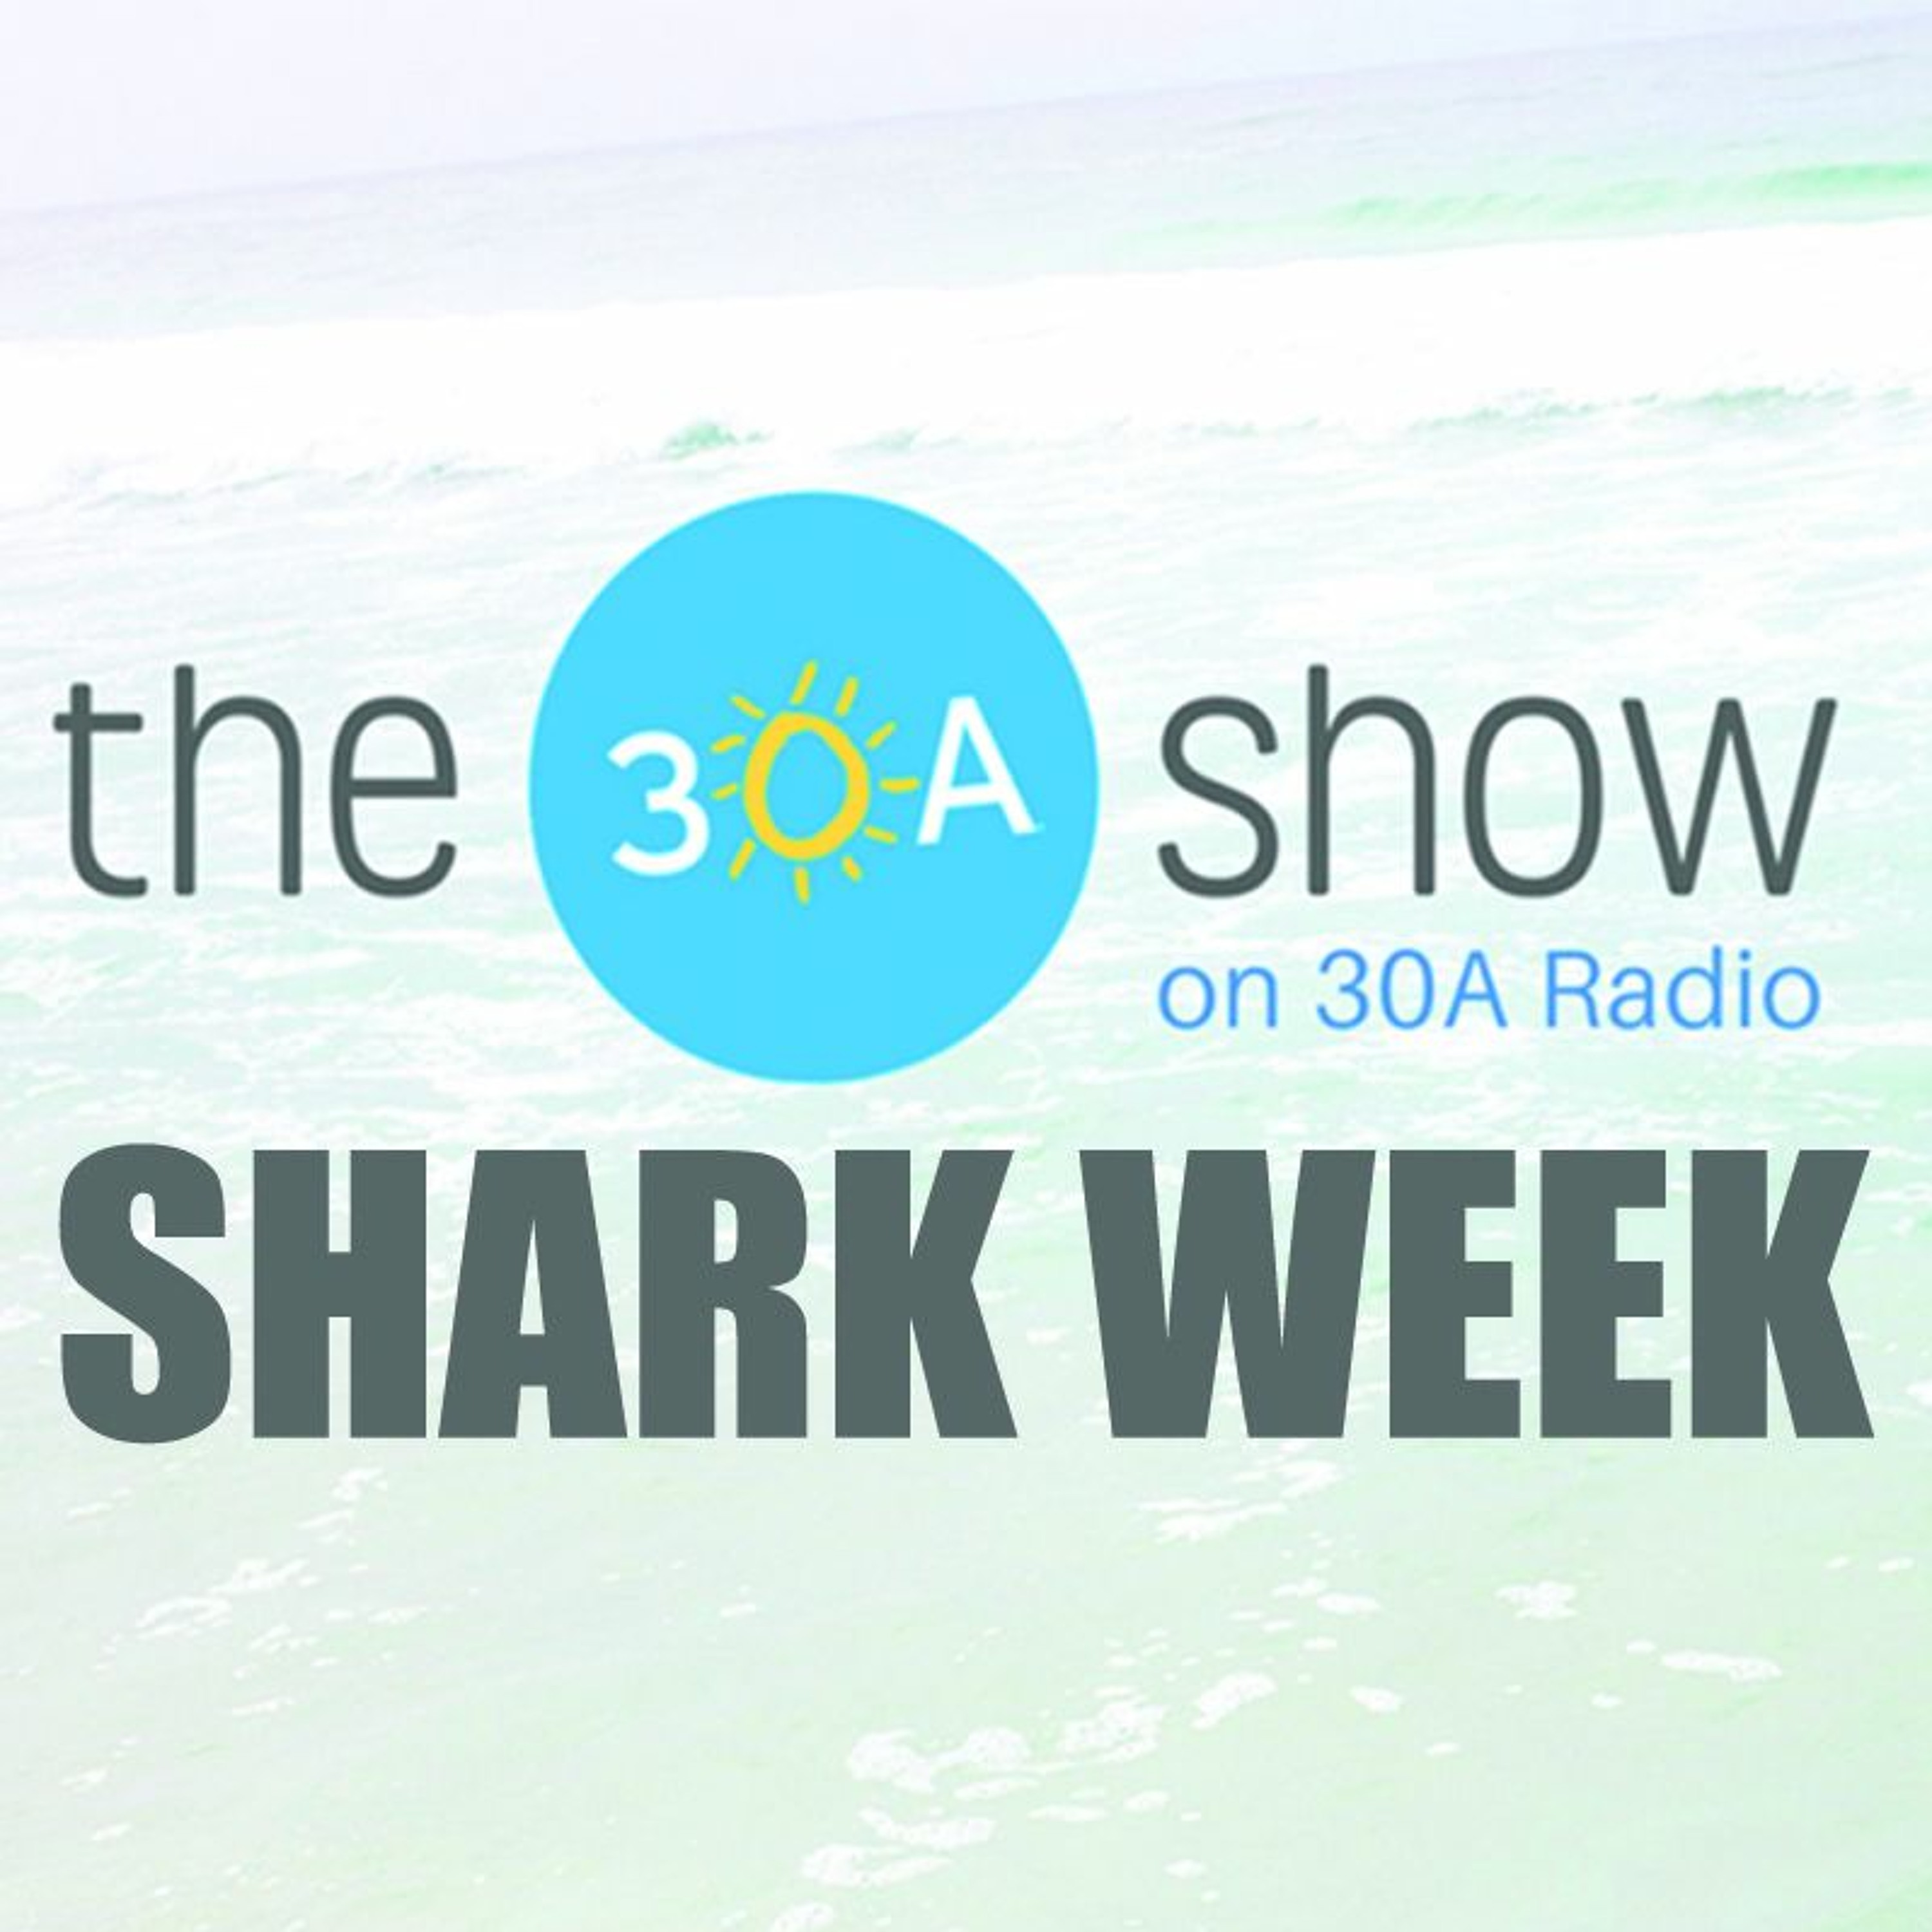 30A Show Shark Week